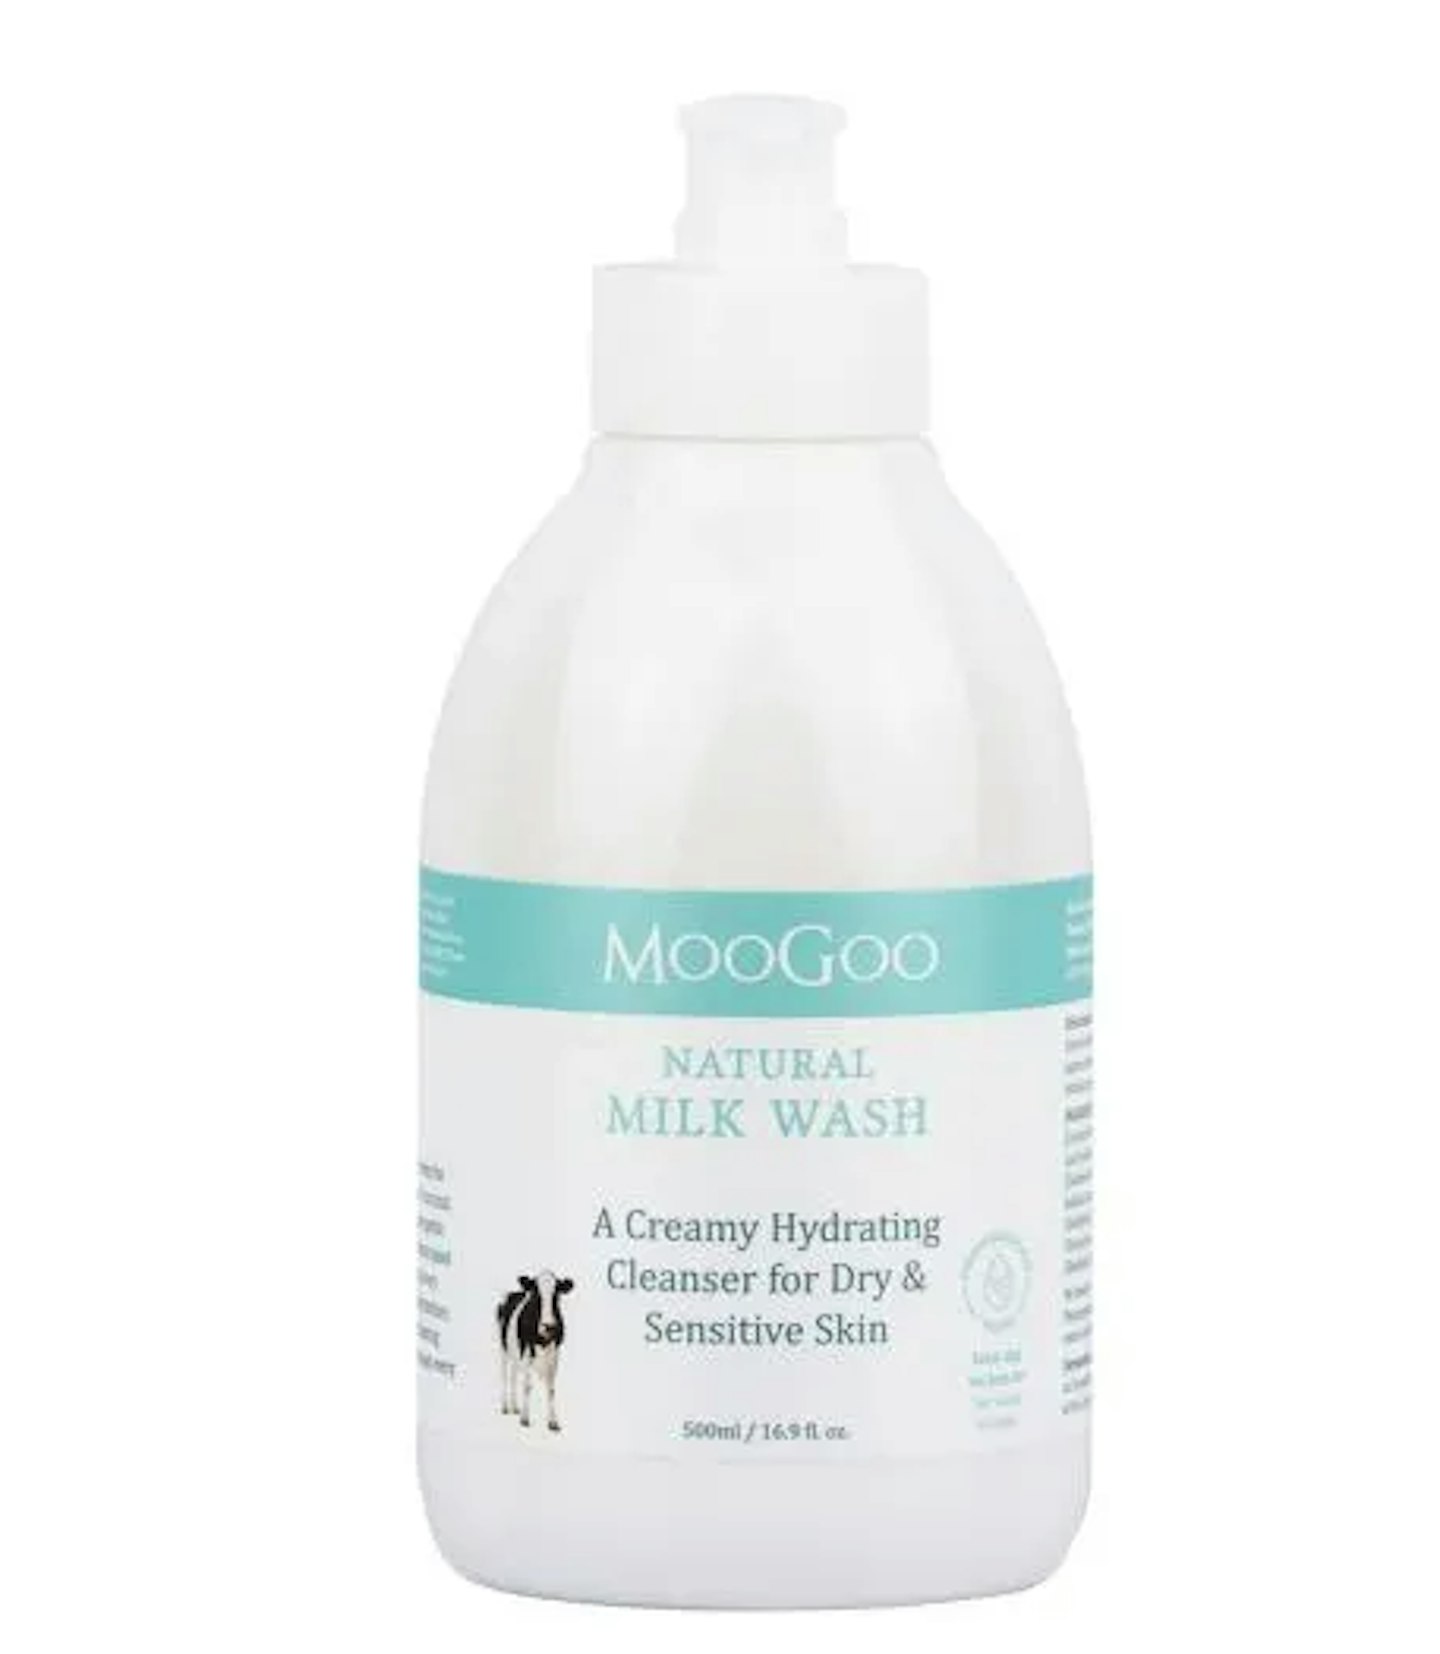 MooGoo Milk Wash